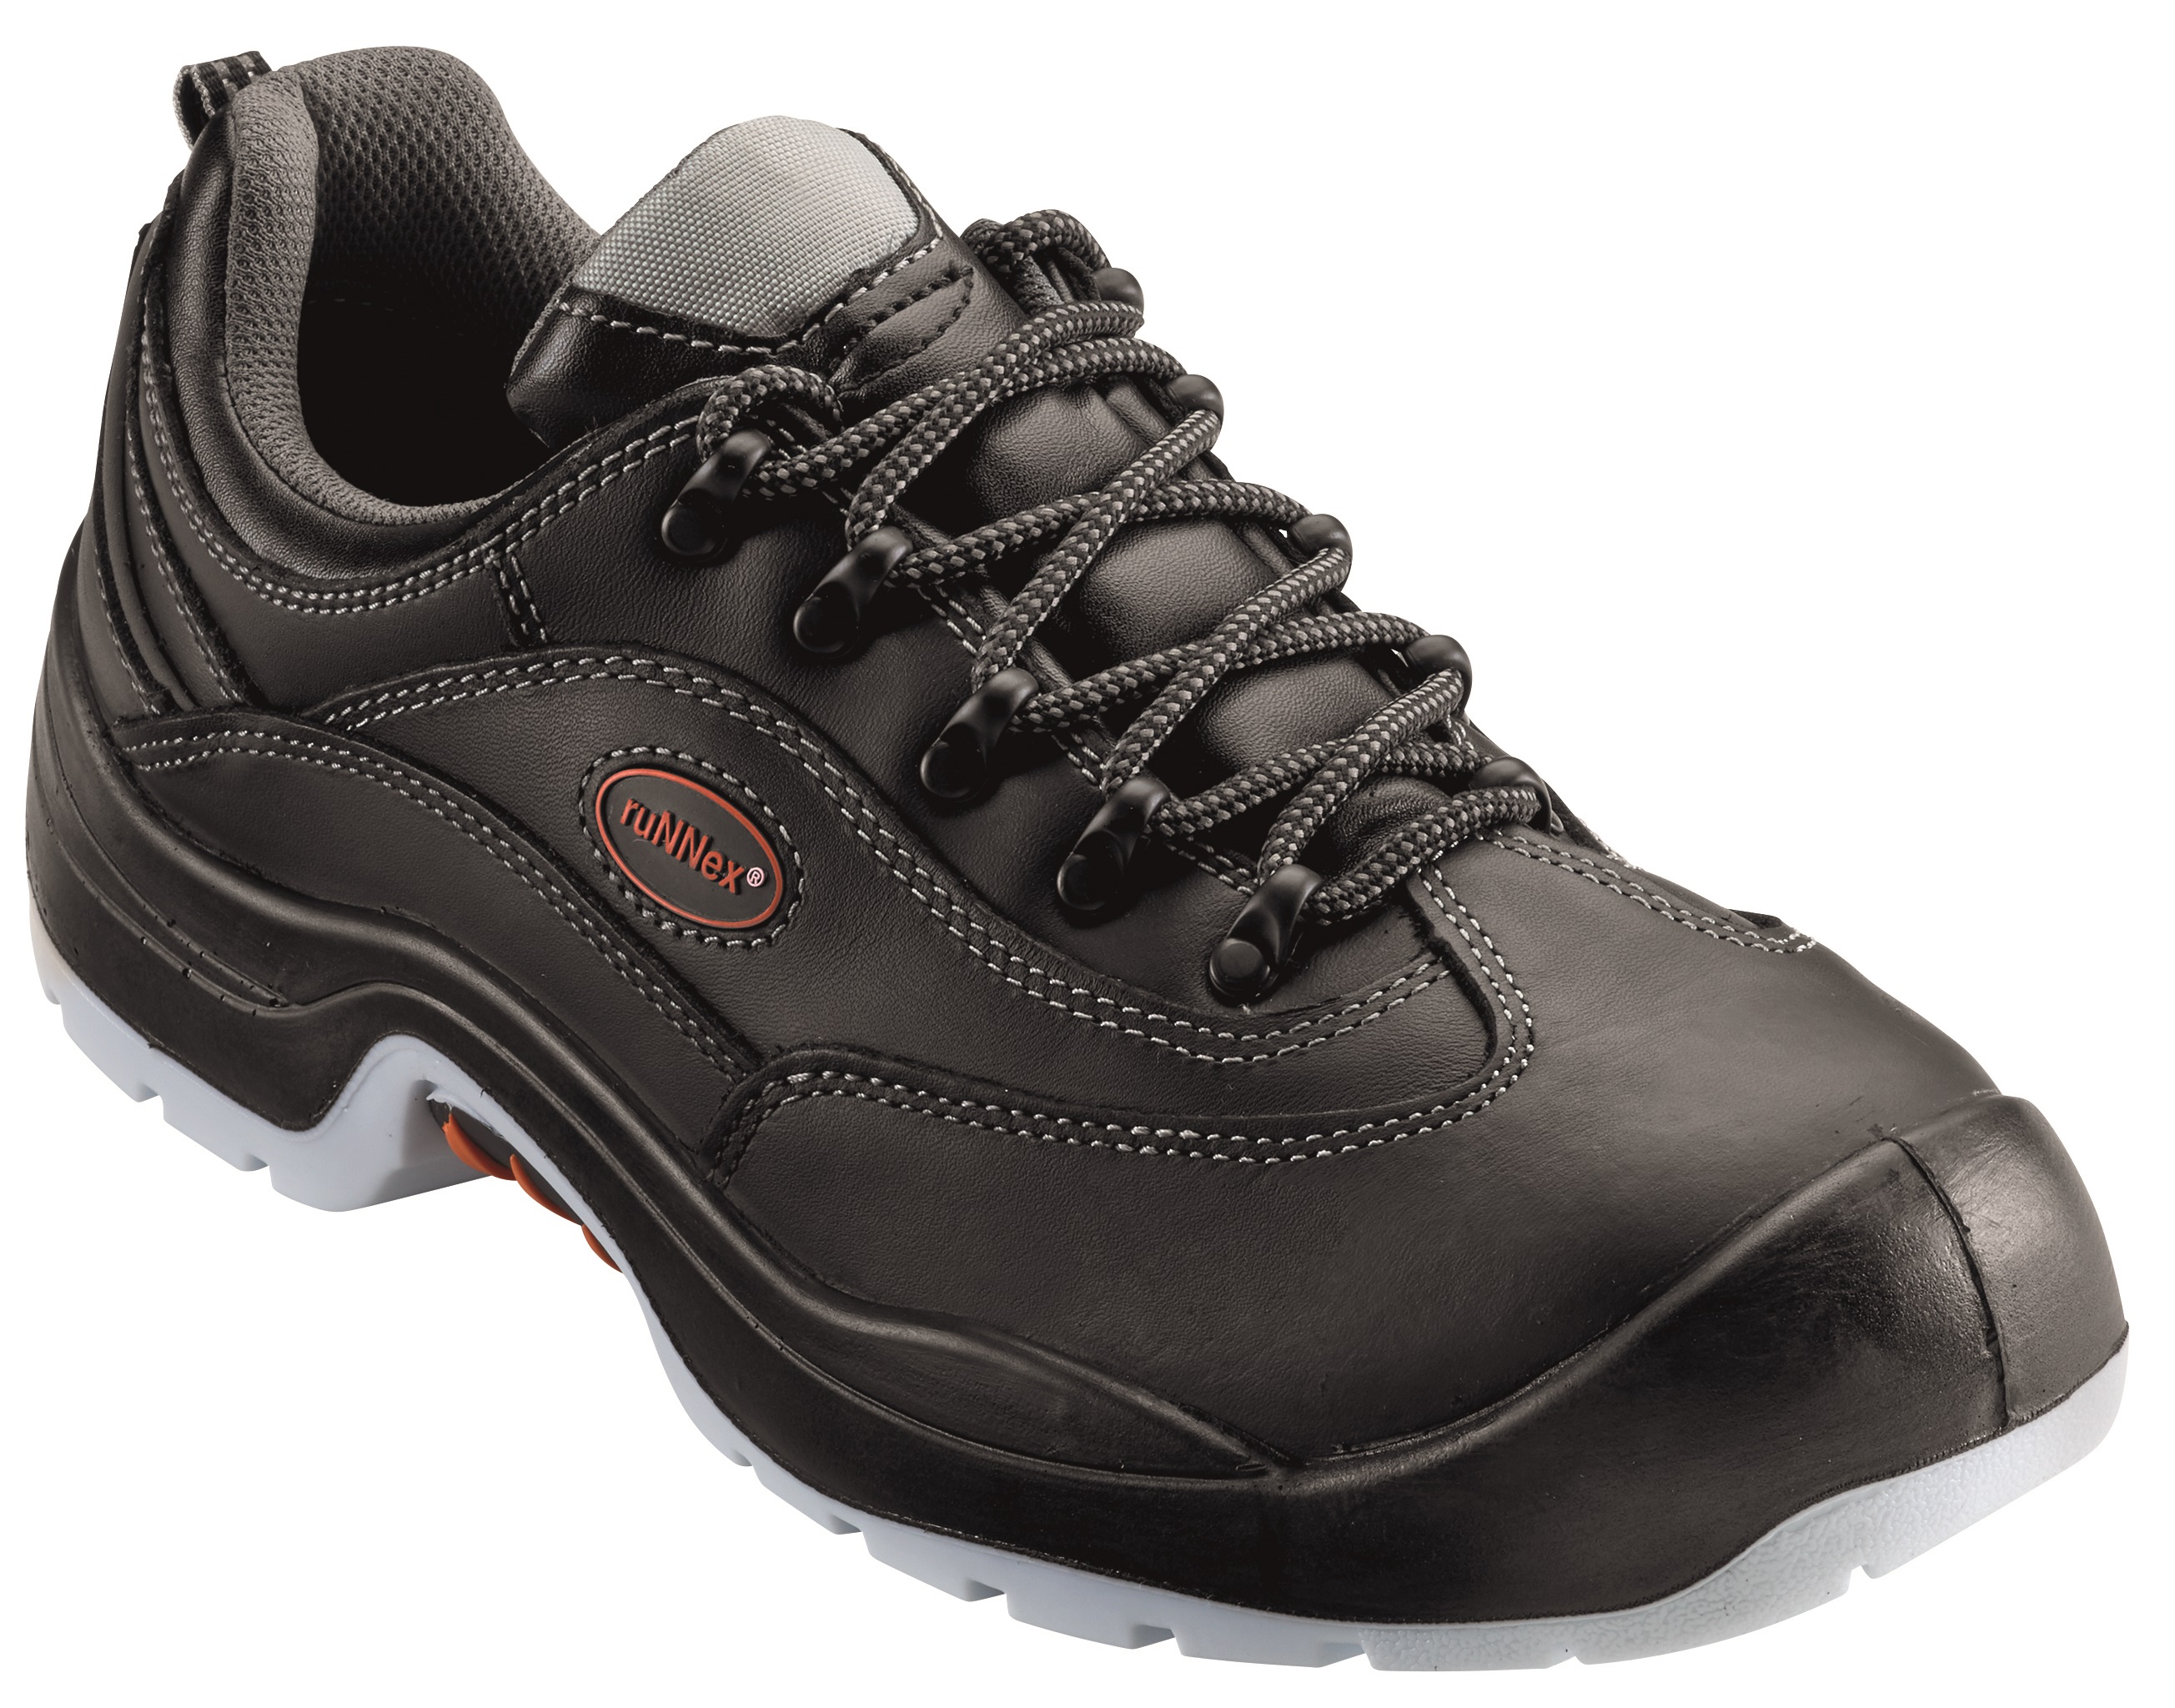 BIG-RUNNEX-Footwear, S3-Sicherheits-Arbeits-Berufs-Schuhe, Halbschuhe, TeamStar, schwarz